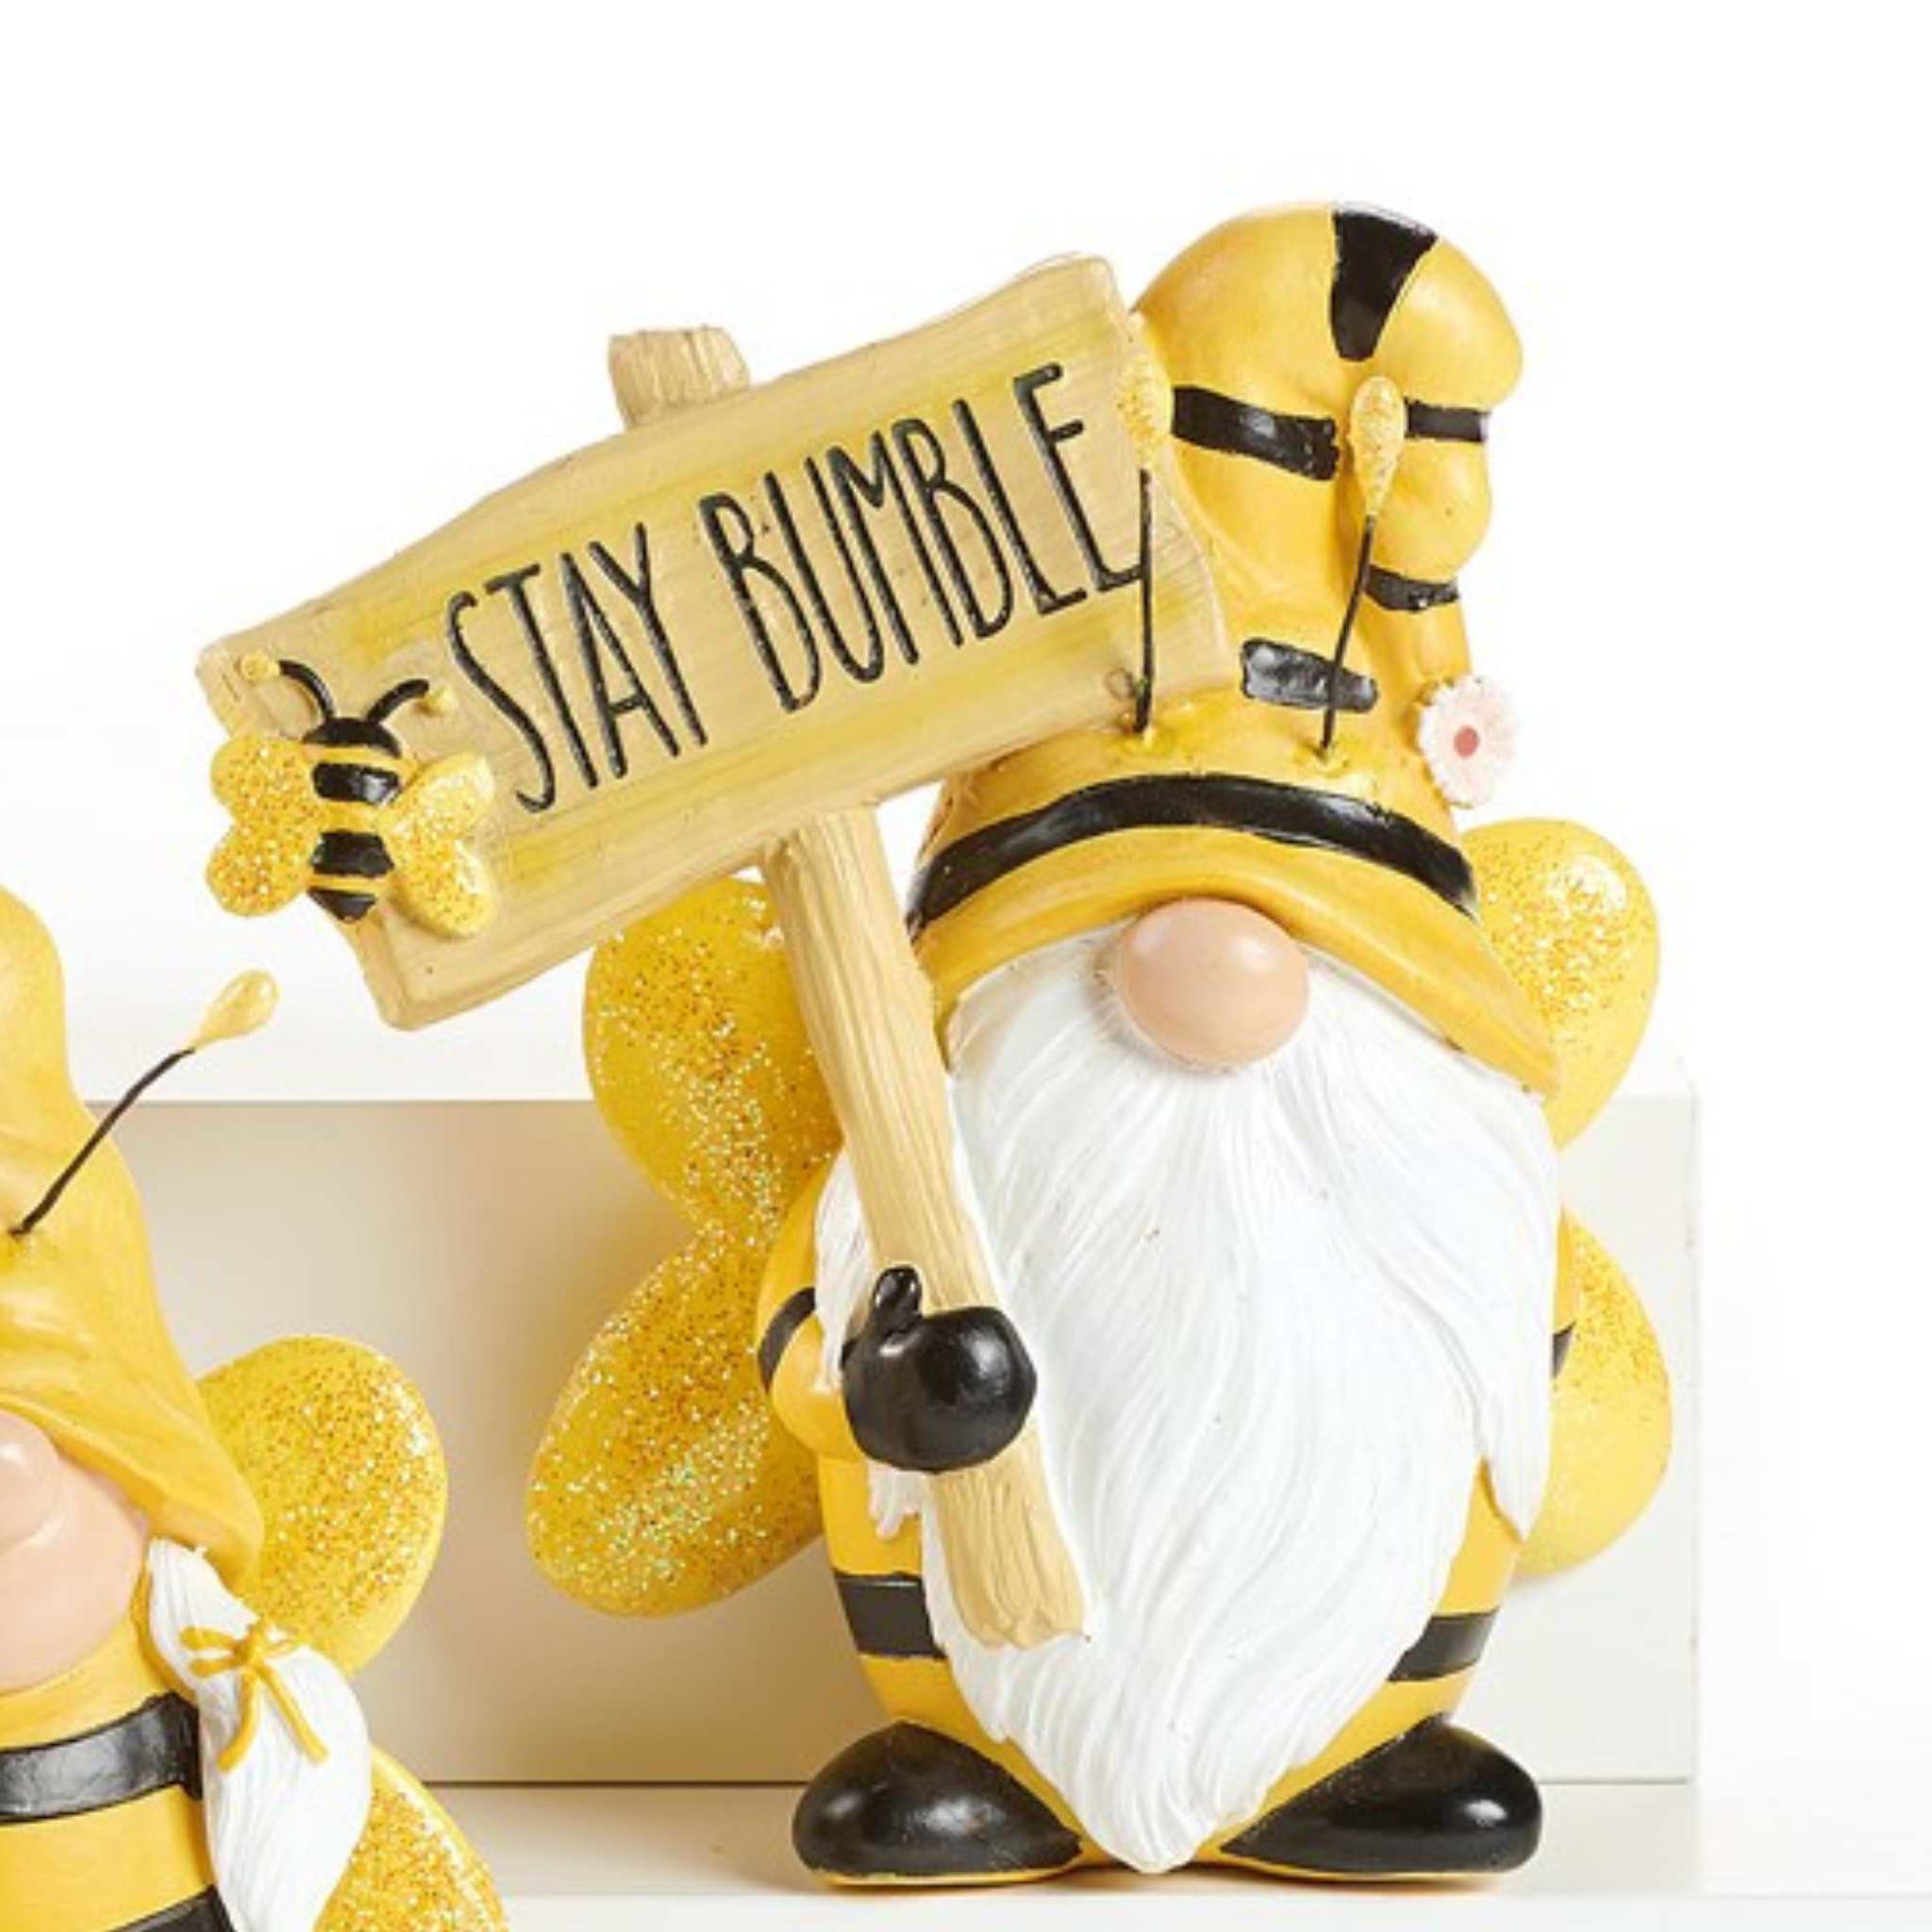 Honey bee gnomes  The Snohomish Bee Company